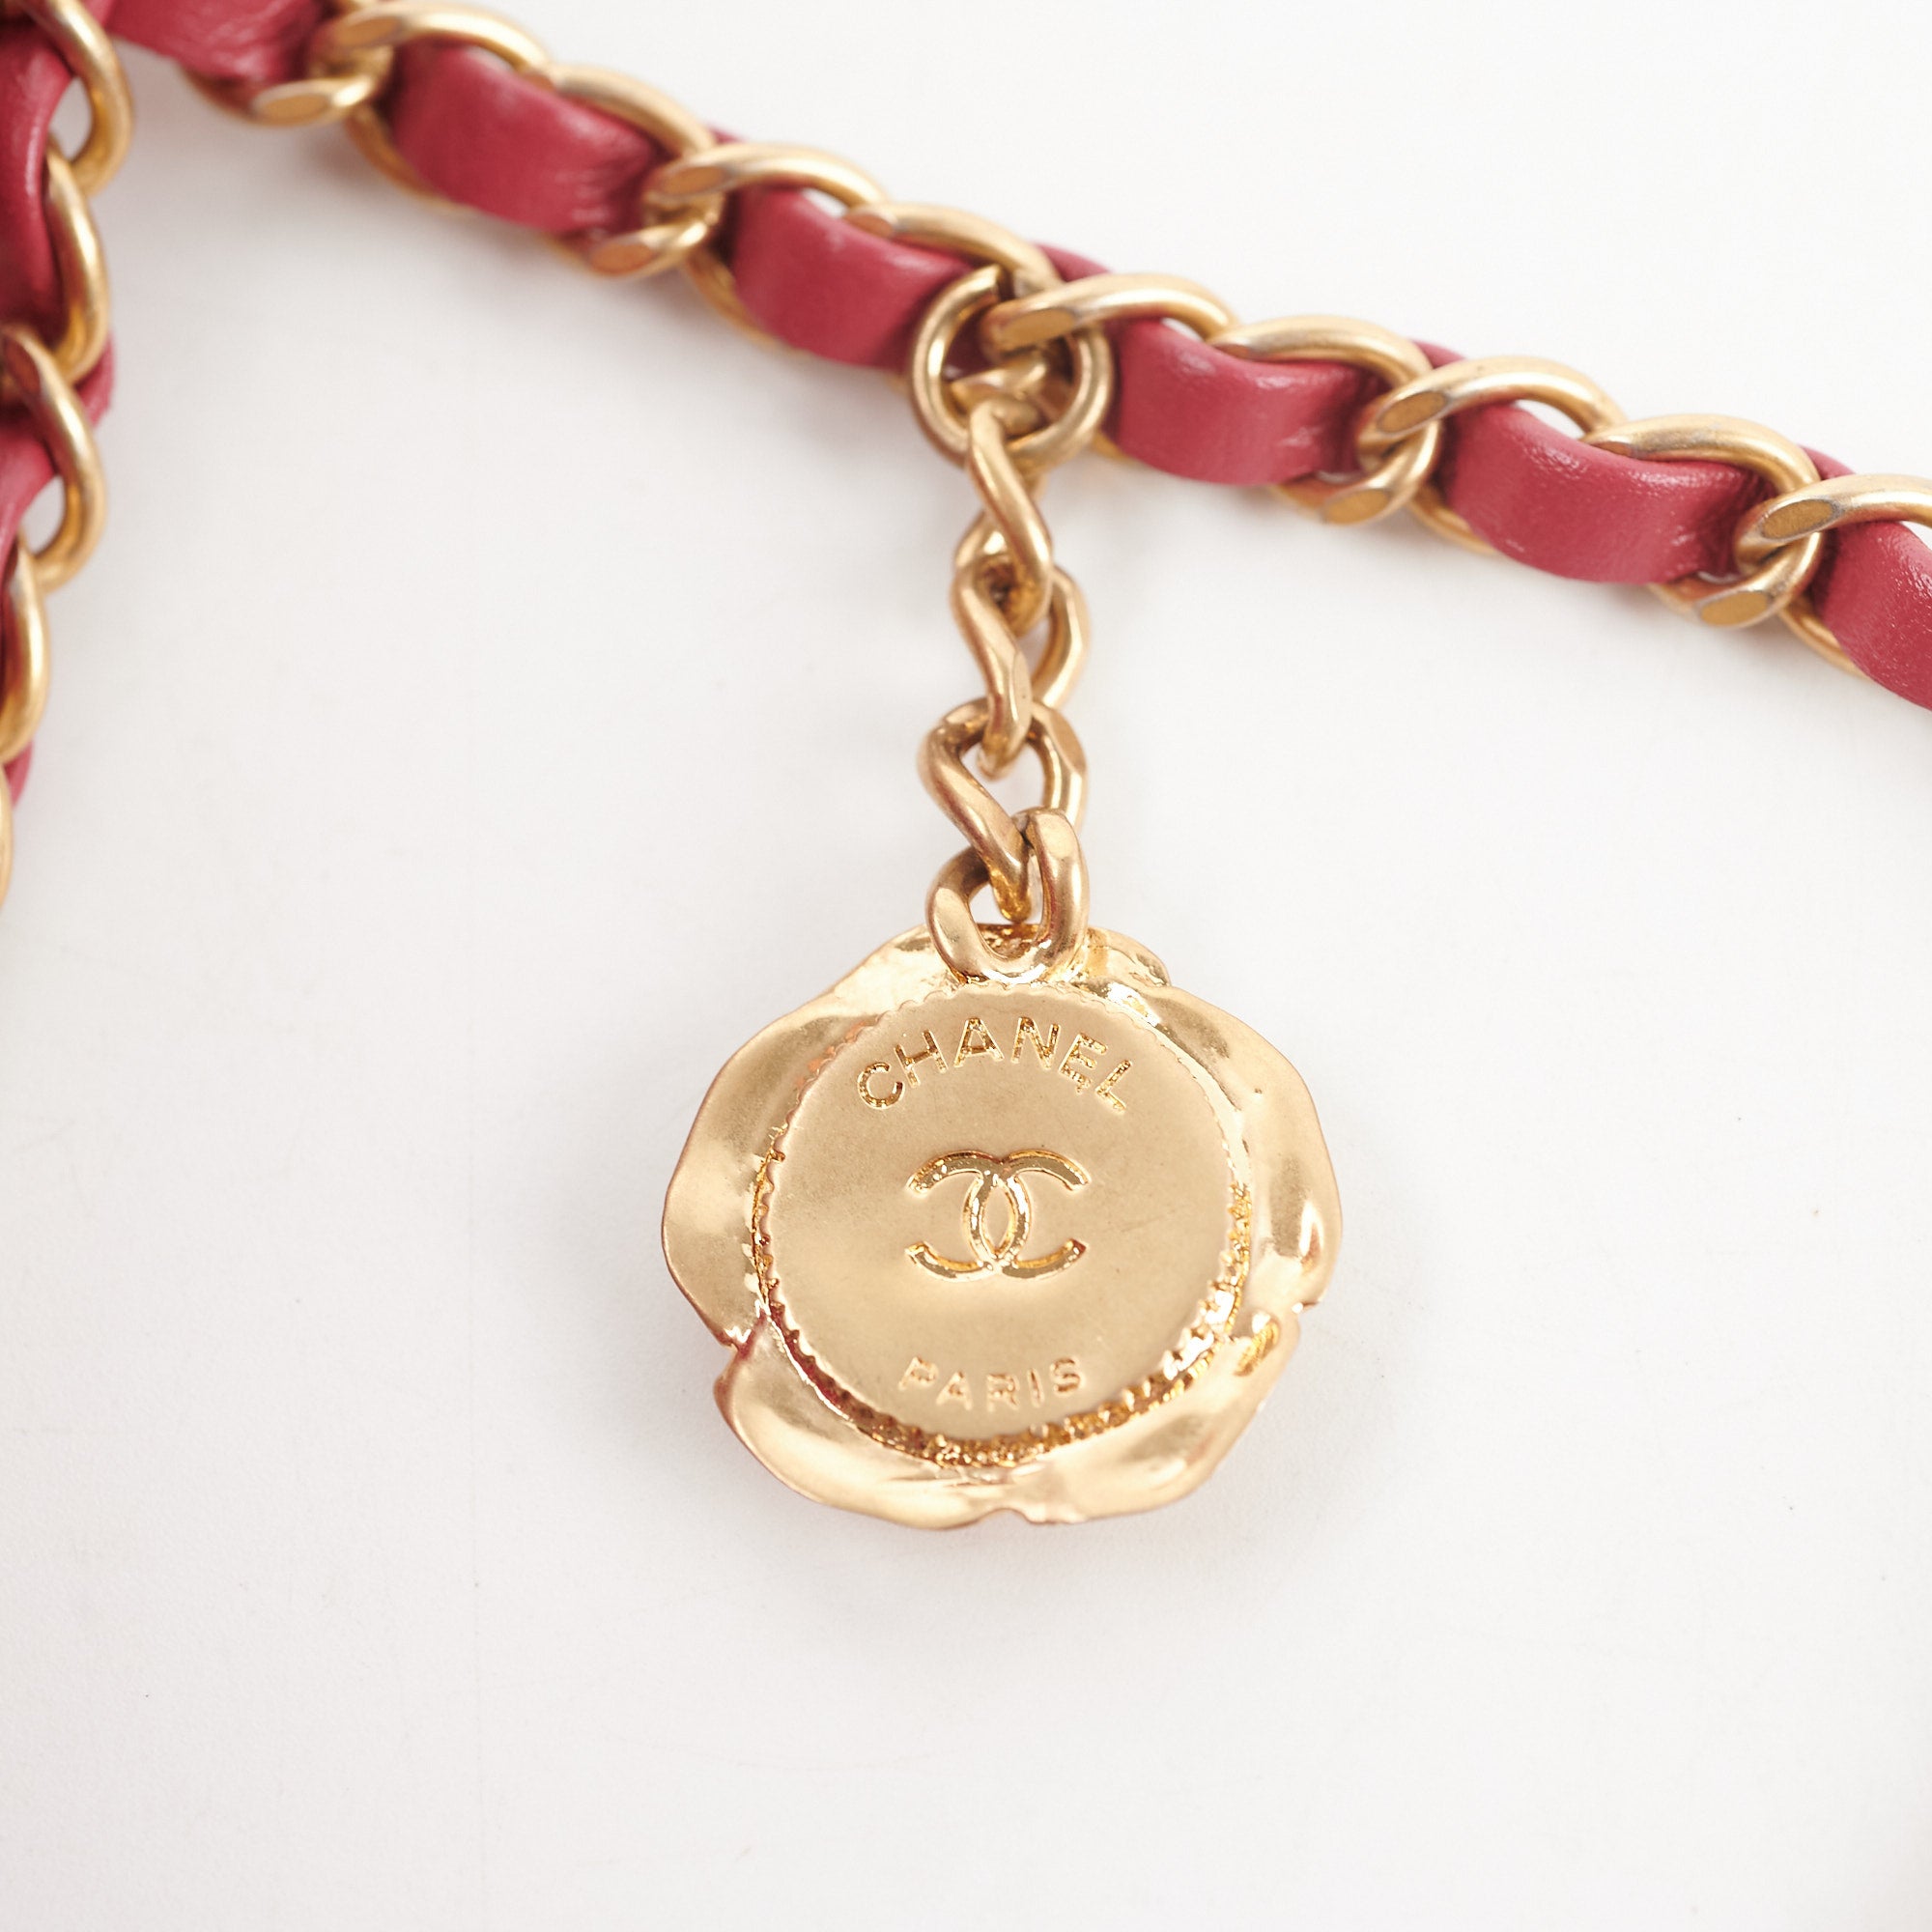 Chanel XL Coin Purse Velvet - Designer WishBags